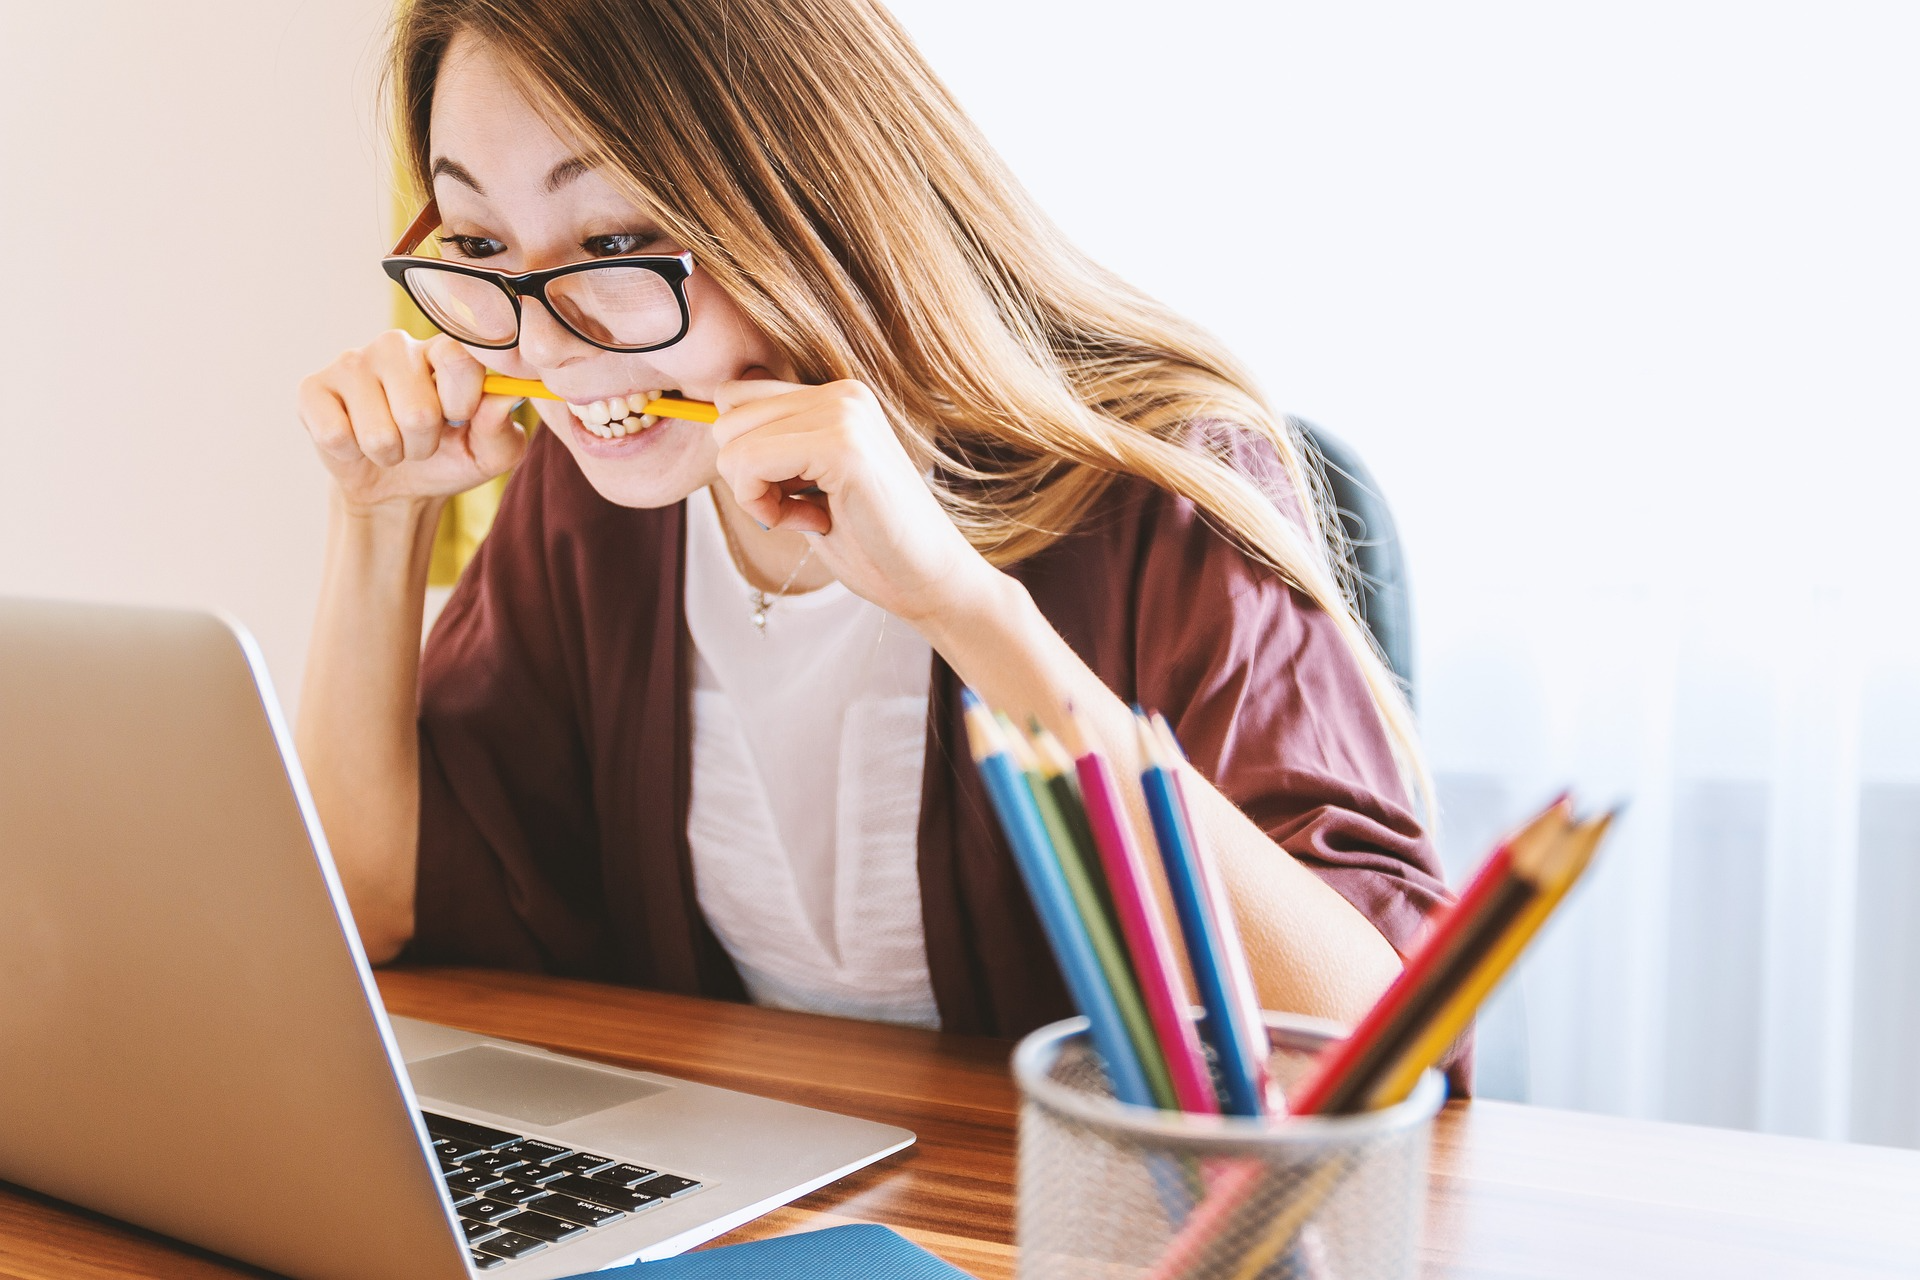 image qui représente une jeune femme devant son ordinateur en train de croquer un crayon car est craque sous l'effet du stress